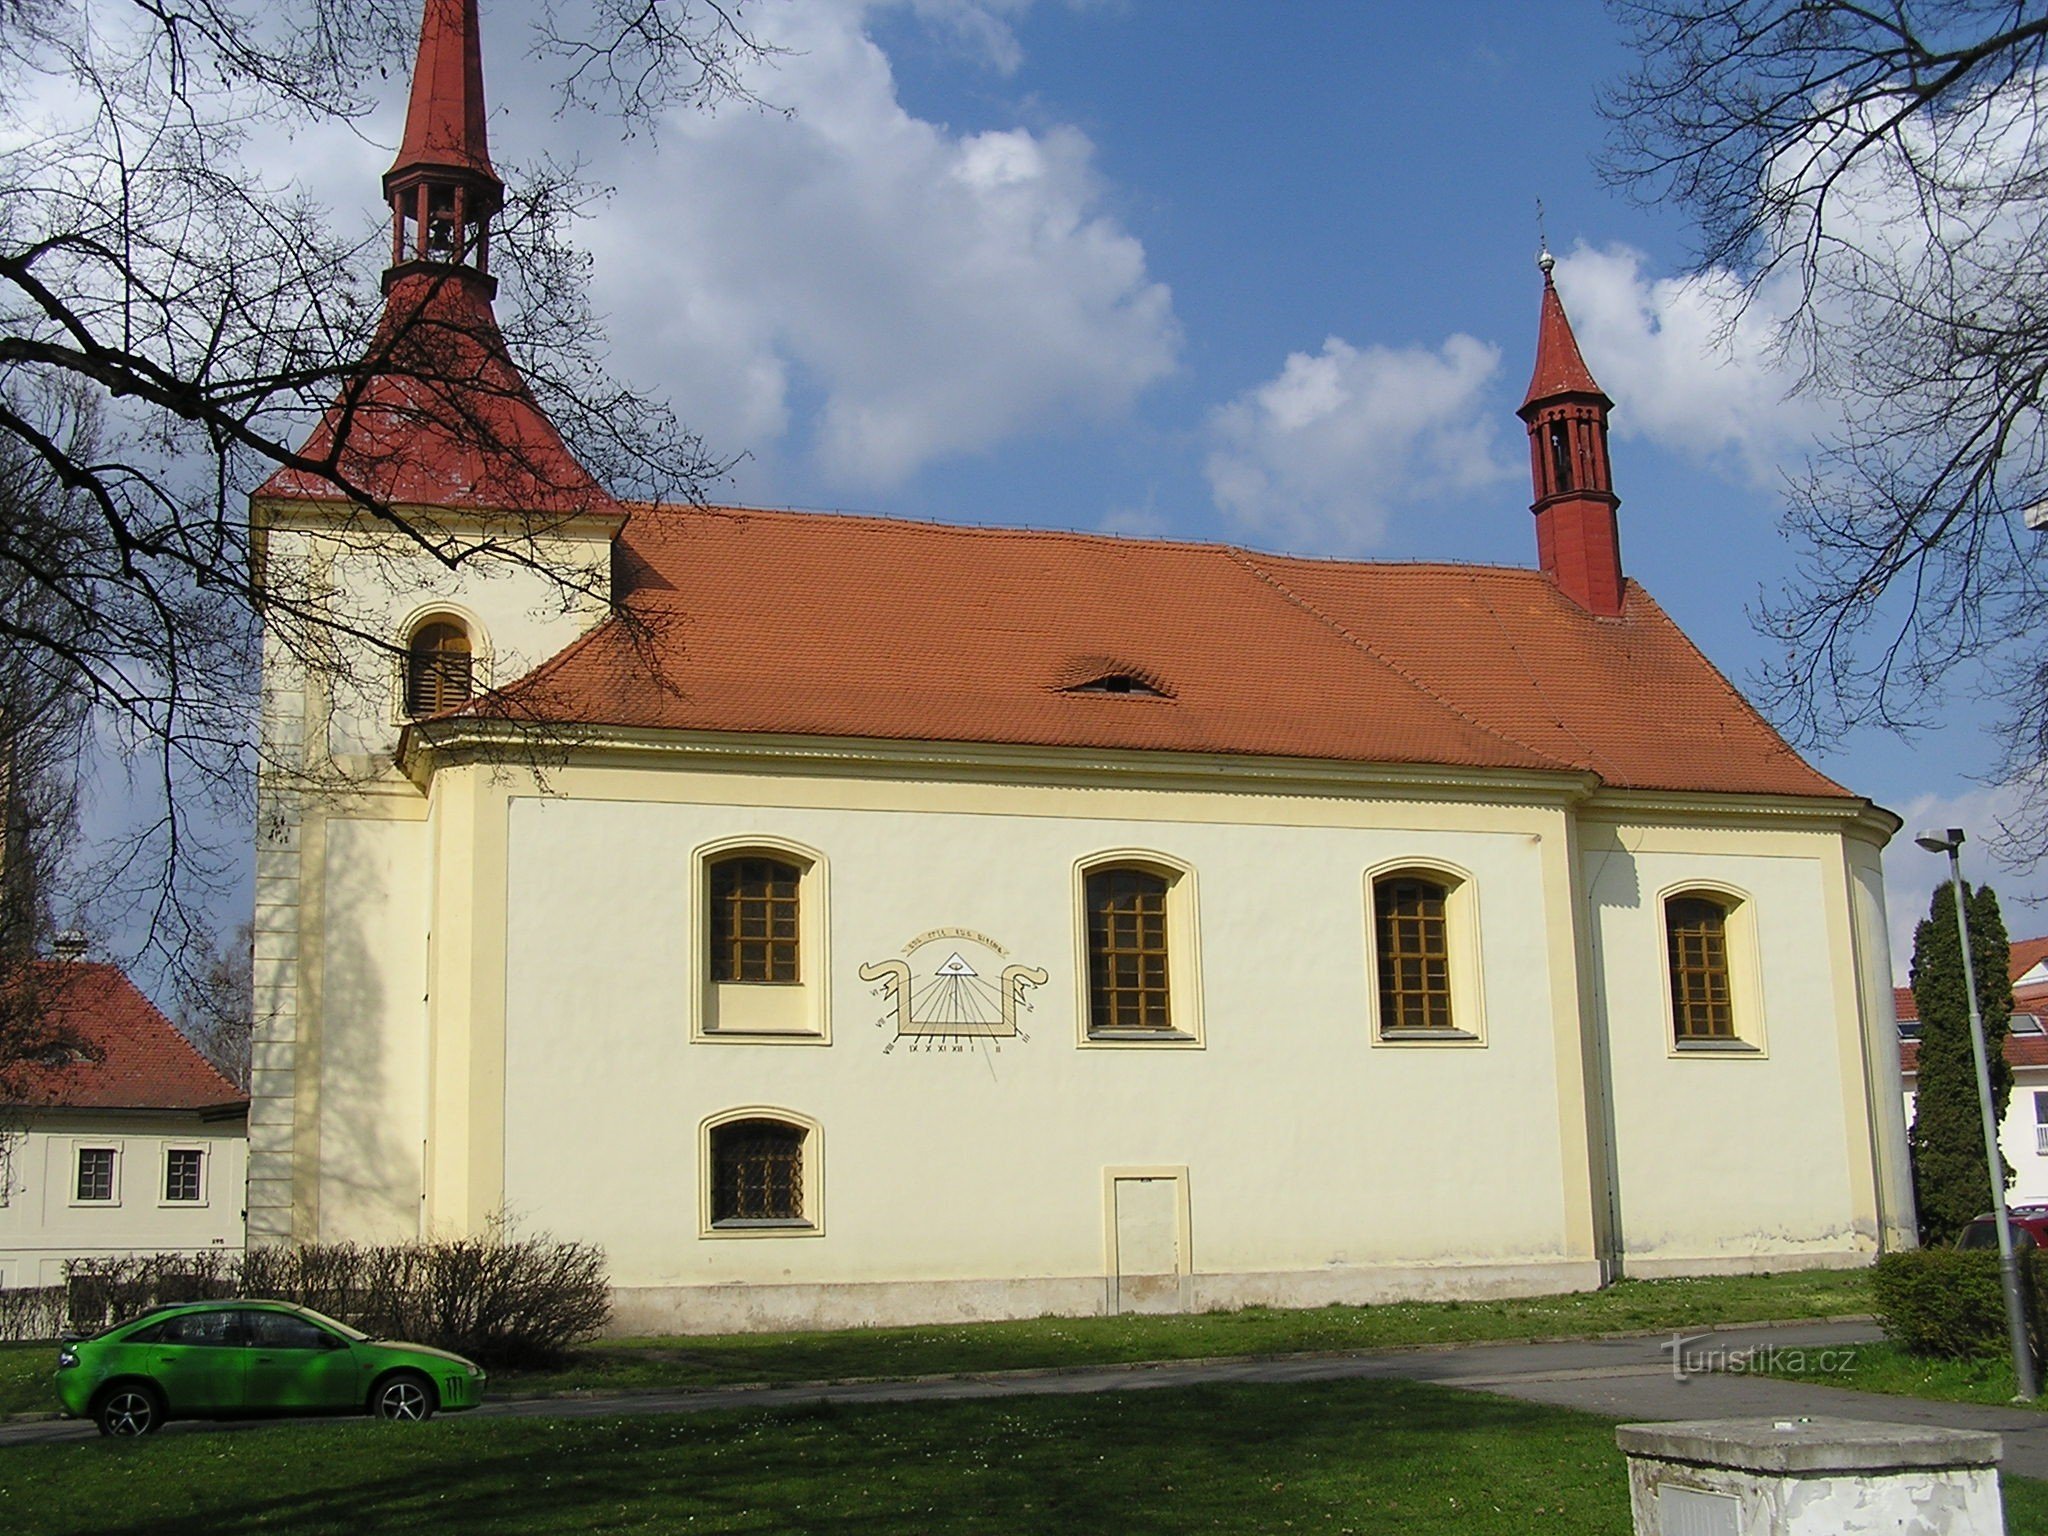 Kościół św. Szymon i Juda (3/2014)